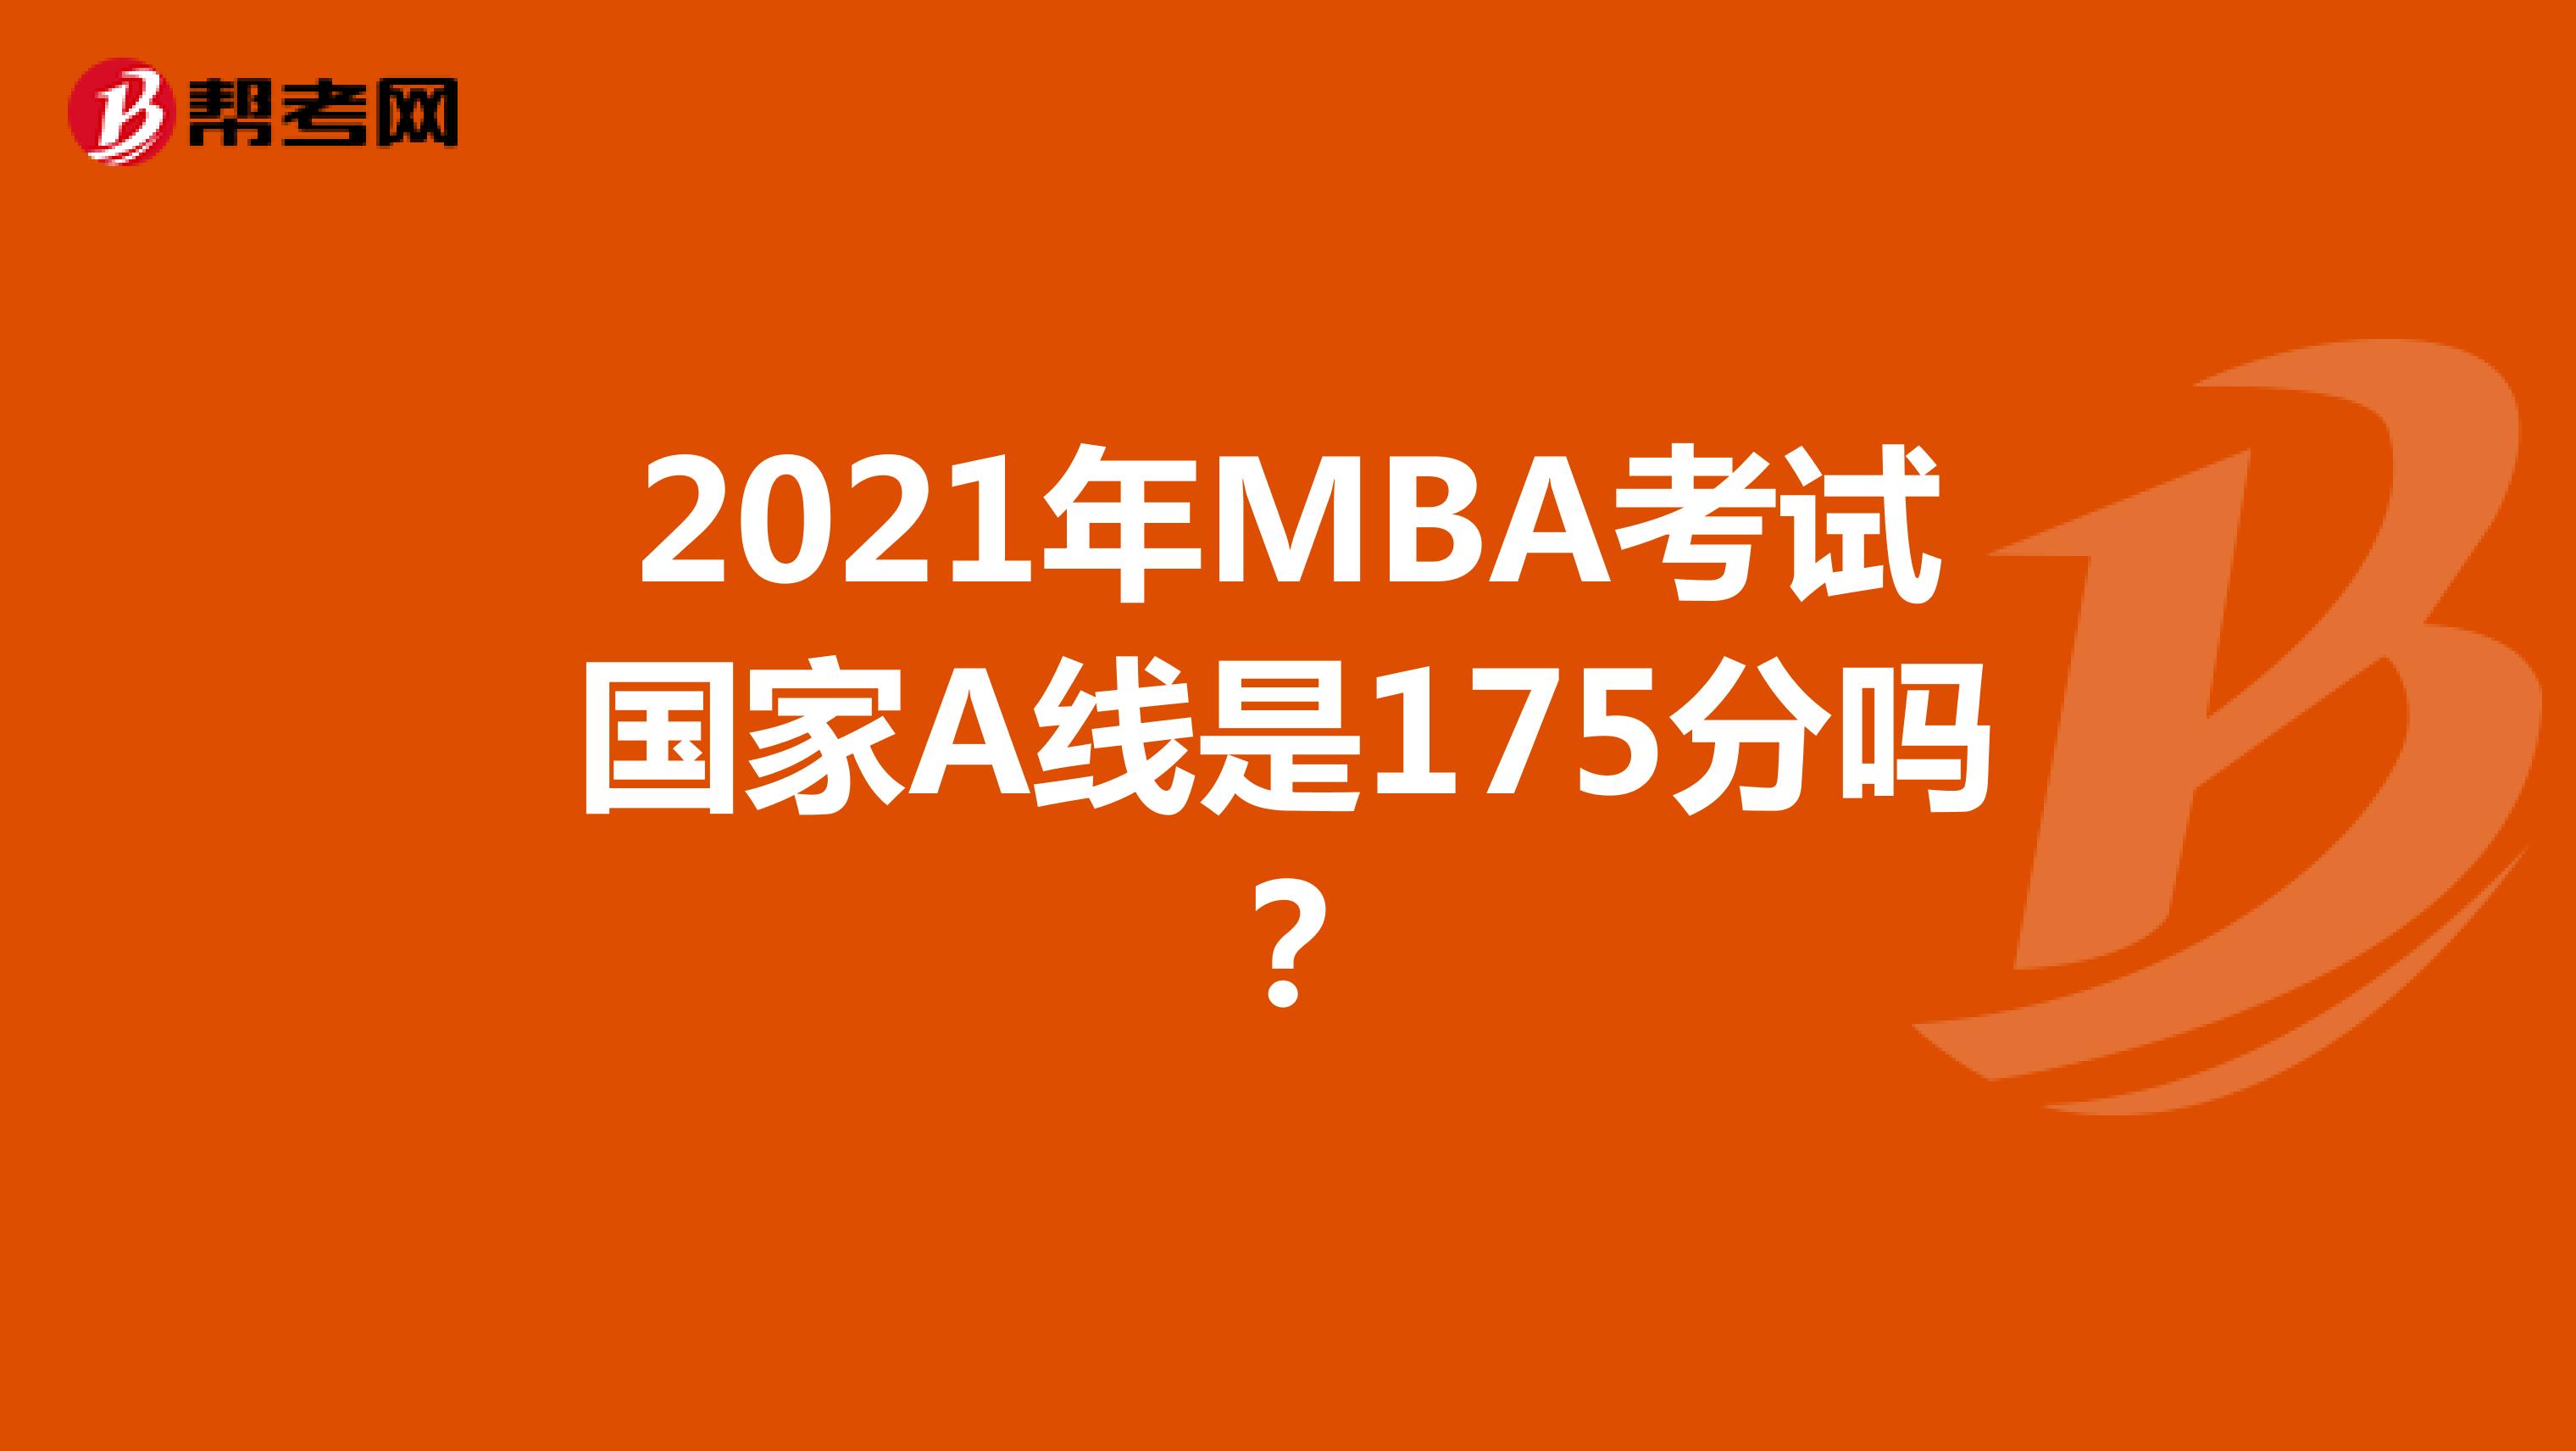 2021年MBA考试国家A线是175分吗？